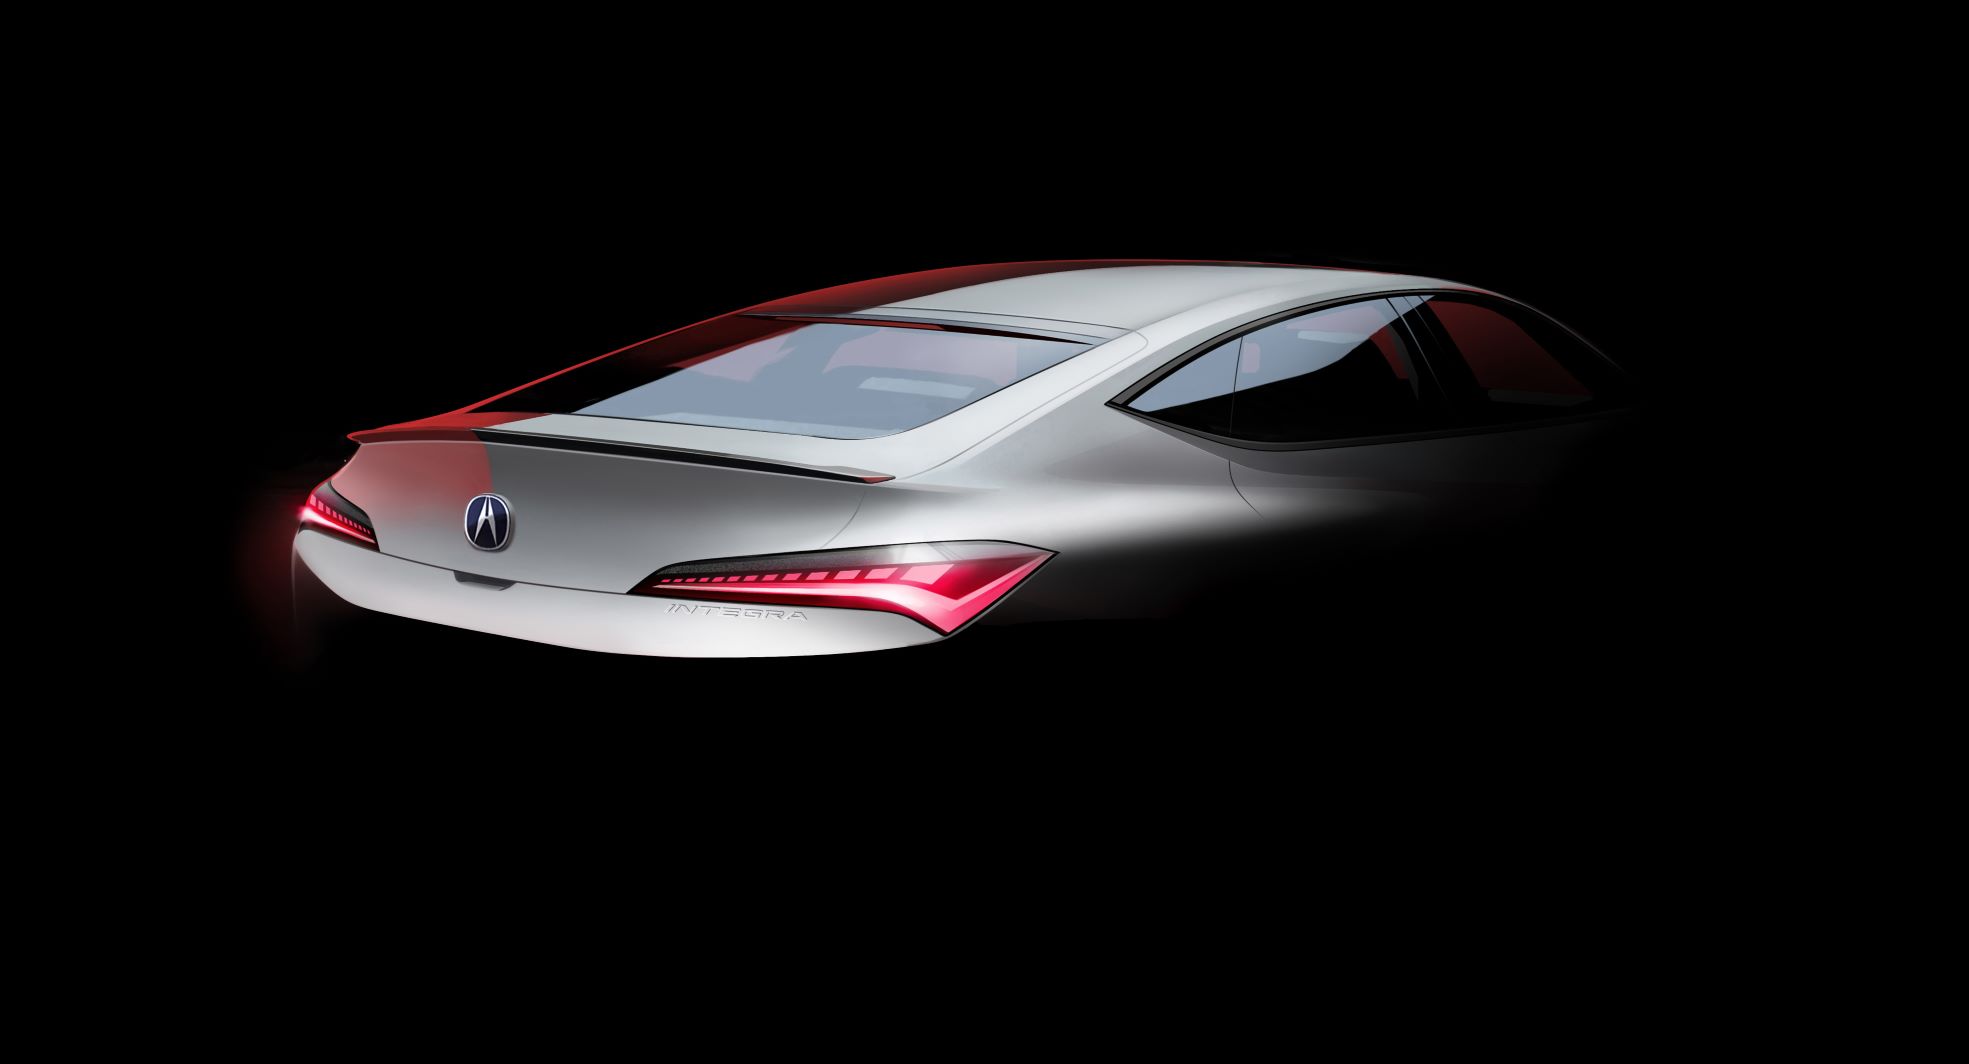 2022 Acura Integra teaser image